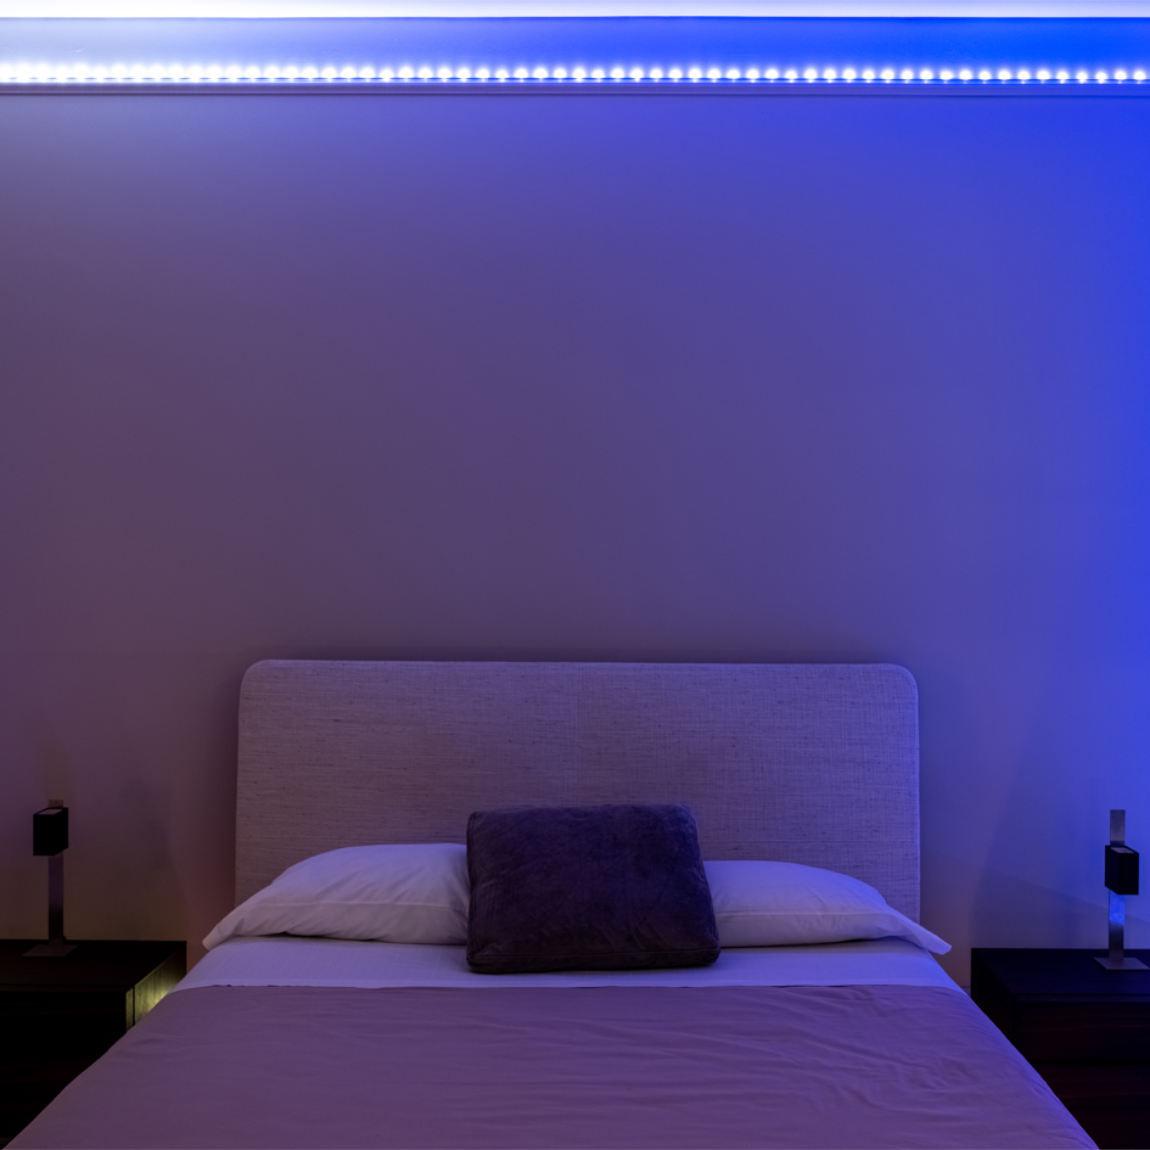 Twinkly Dots - Smarte Lichterkette mit 200 LEDs_Lifestyle_Schlafzimmer blau